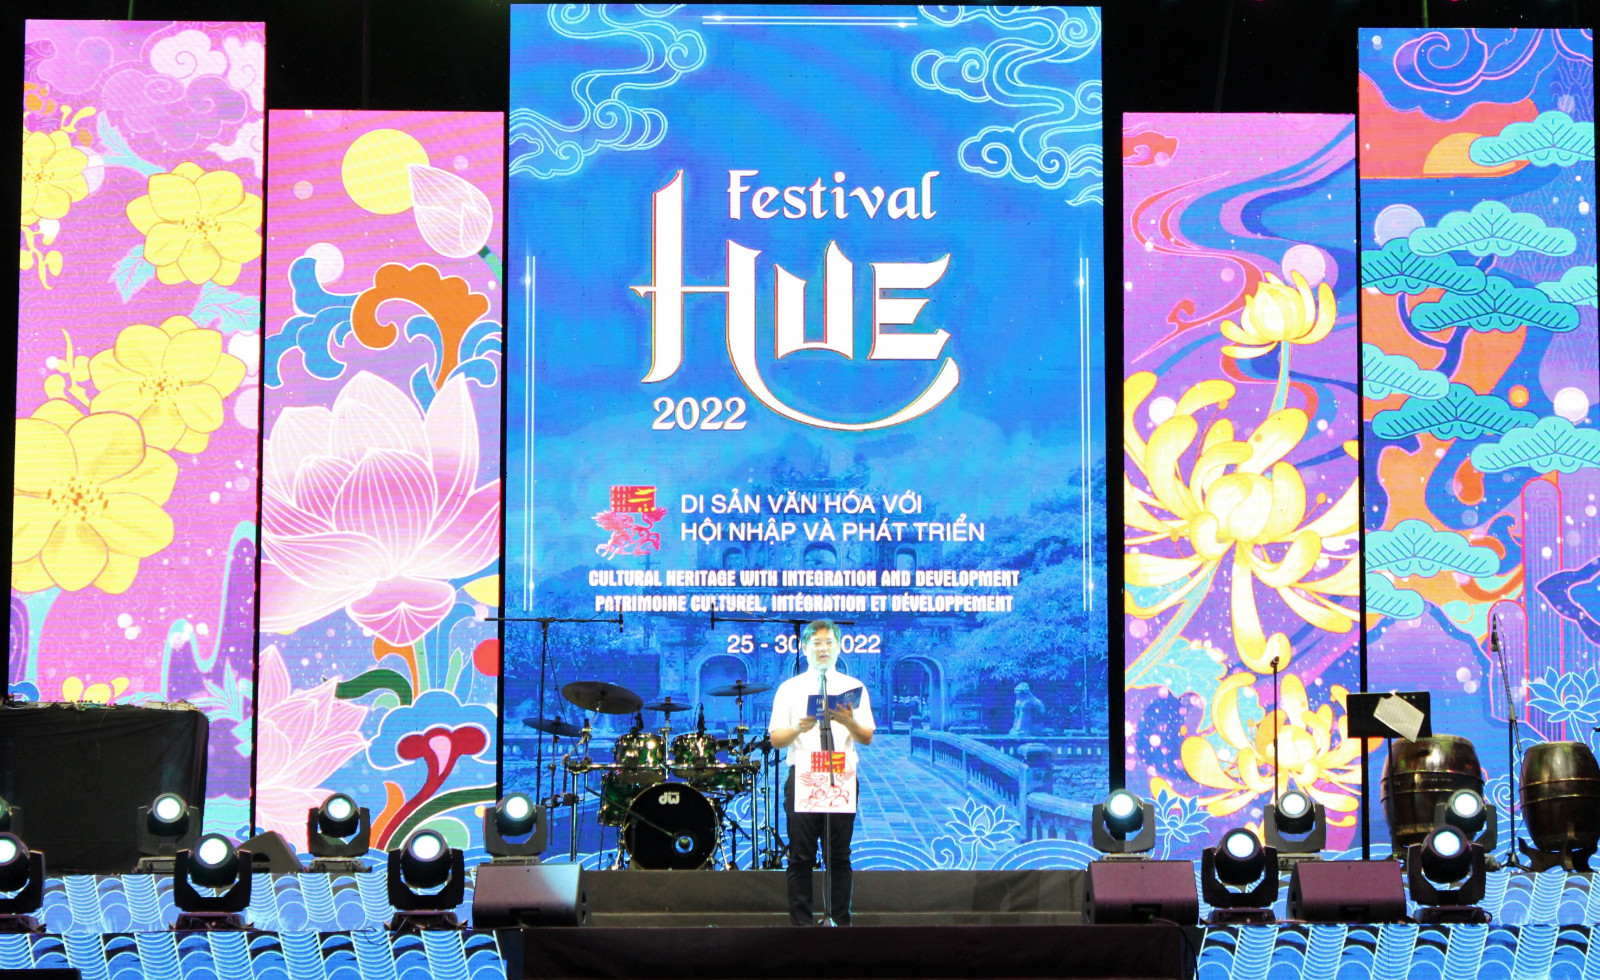 Ông Nguyễn Thanh Bình, Phó Chủ tịch UBND tỉnh Thừa Thiên Huế, Trưởng Ban tổ chức Festival Huế 2022 phát biểu tại đêm Gala